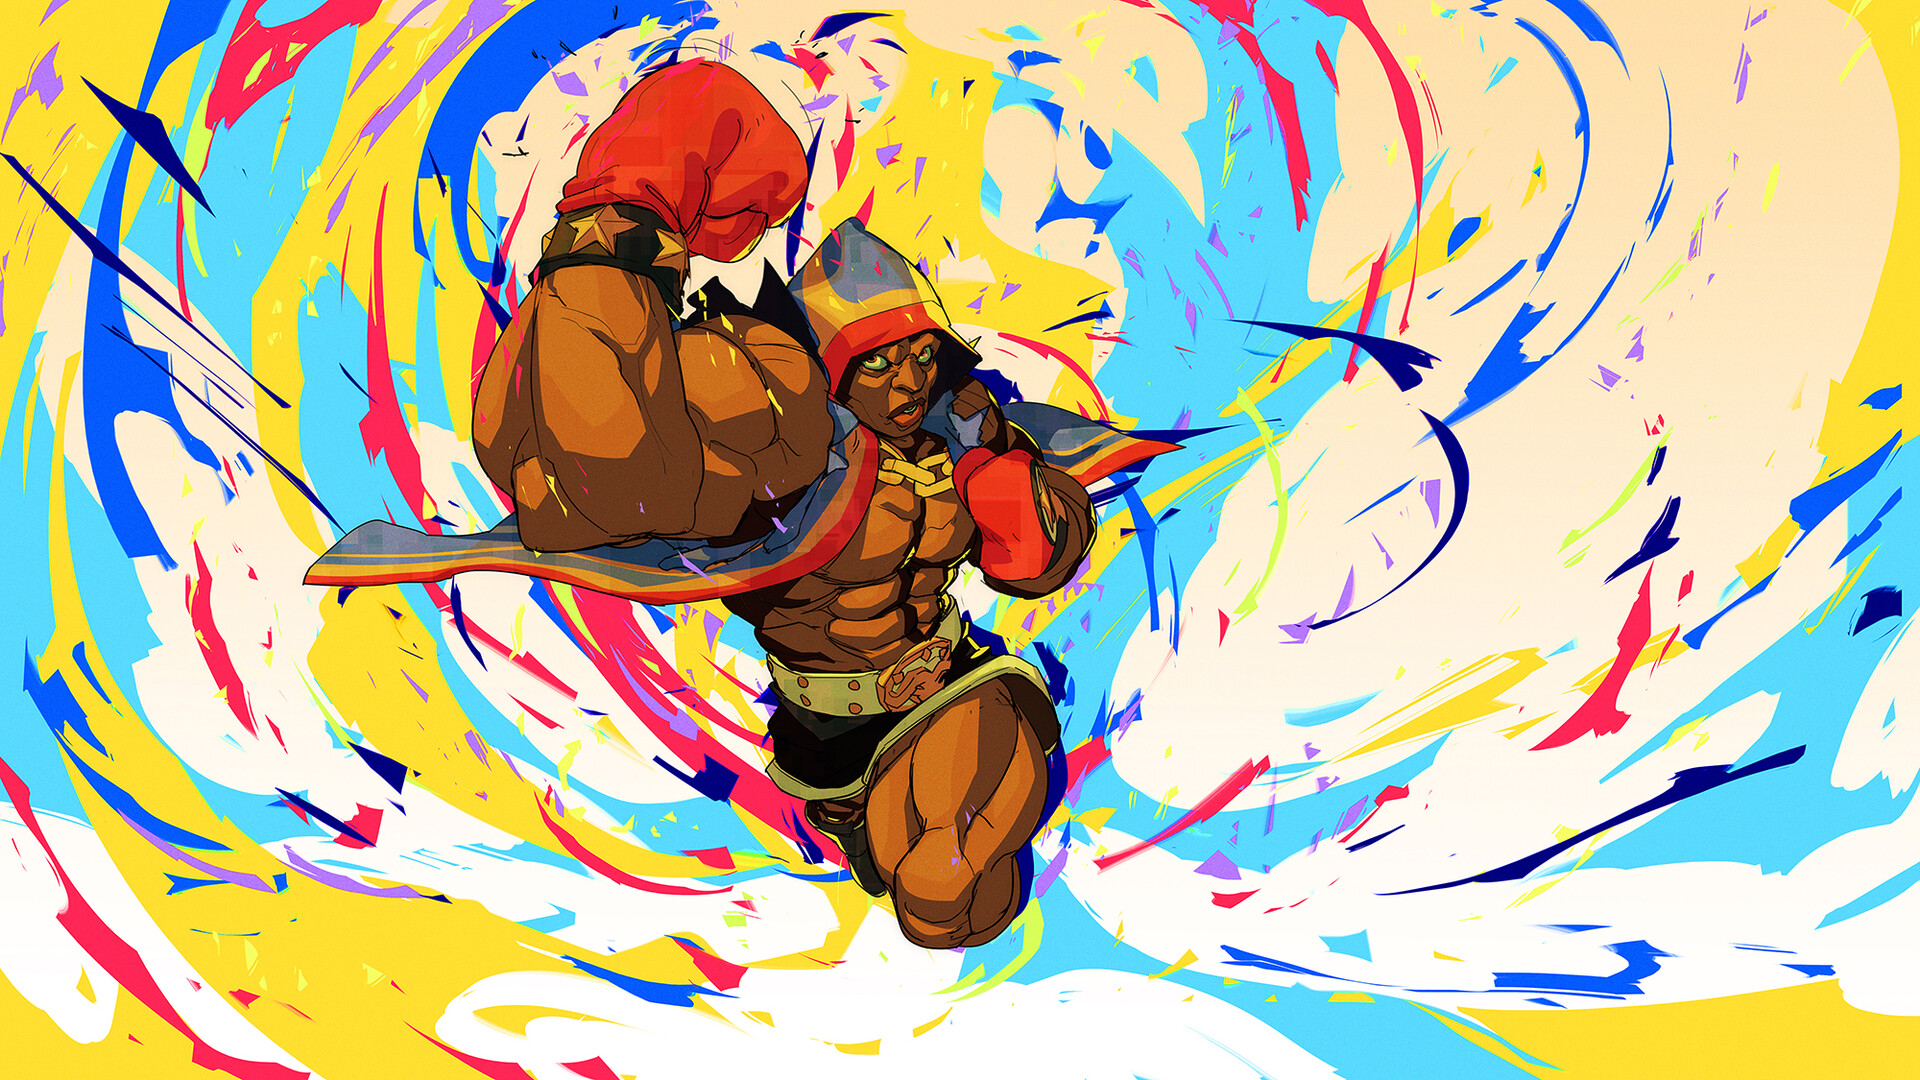 Balrog - Street Fighter by Jander González Mella